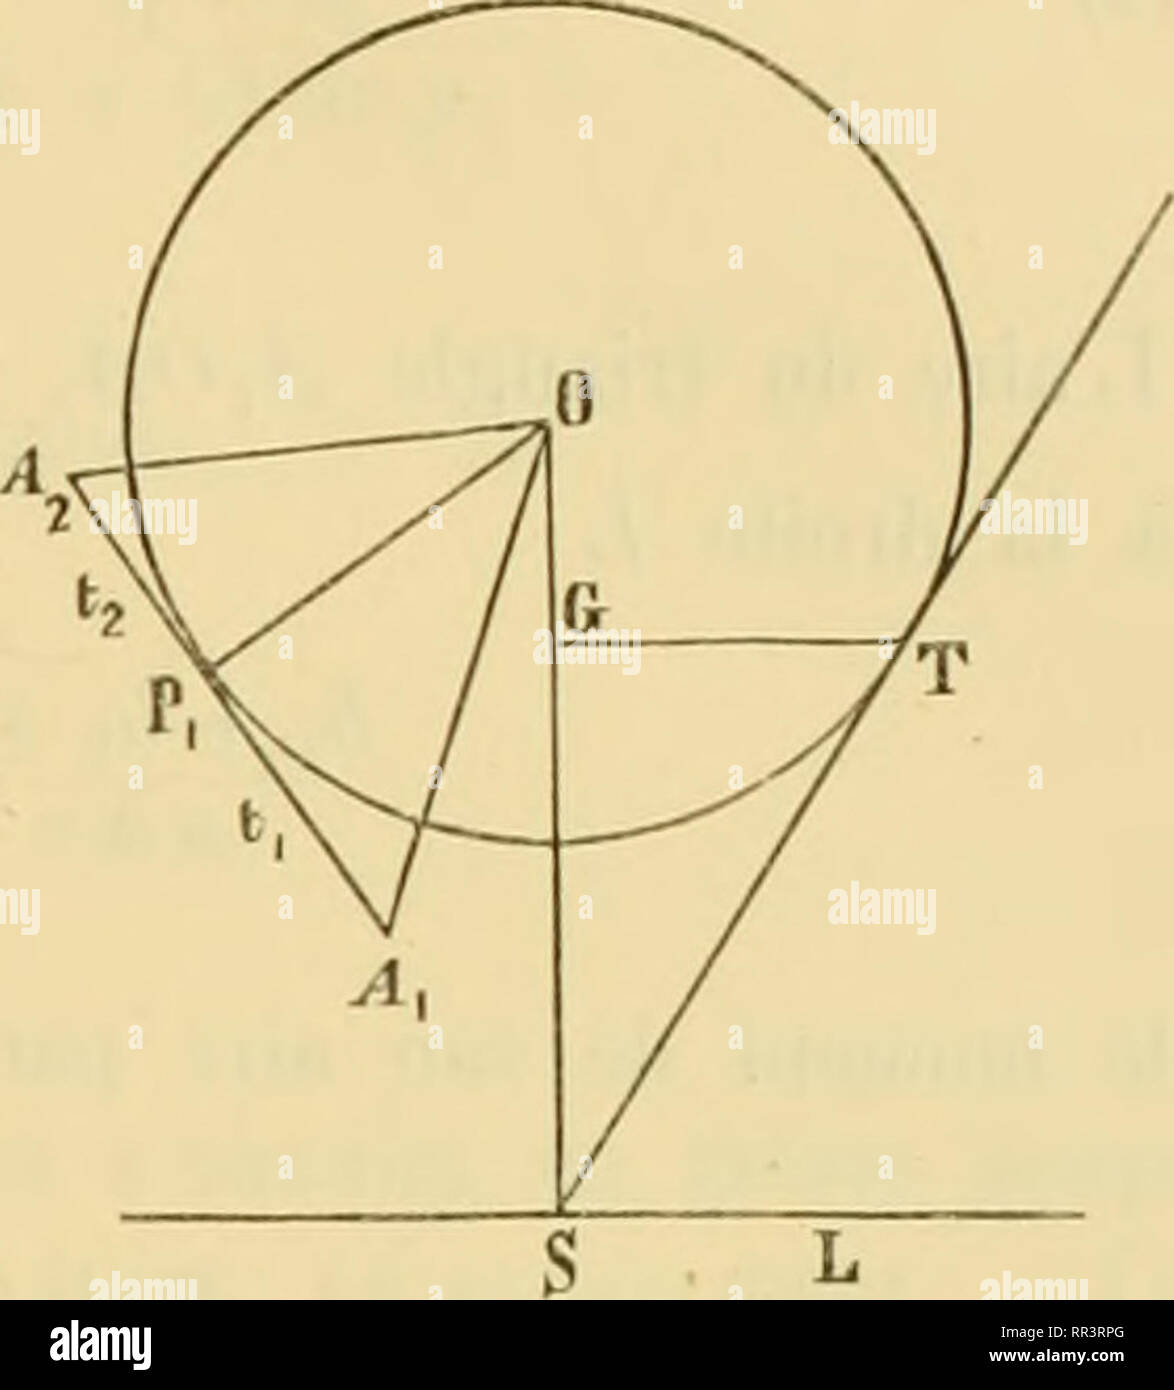 . Acta Societatis Scientiarum Fennicae. Science. N:0 8. Beclierthes sur les polyèdres maaima. 23 Fis Désignons par J^, Ao, ^3,... les sommets de la section centrale, par Pi, Po, P3, . . les points où ses côtés successifs sont touchés par le cercle inscrit, par //,, //o, h-,,... les perpendiculaires abaissées de Ai, A-,, A-,, . . sur la droite L, par f 1 ) {'2, J':i • • • les angles formés par les rayons OPi, OP2, OP.,, . . avec la droite OS et comp- tés de celle-ci, en tournant de gauche à droite, de 0 à 2n, par ^,, t., les deux segments A^ Py, Pi A-, du côté Al A,, par to, t^ les segments A^P Stock Photo